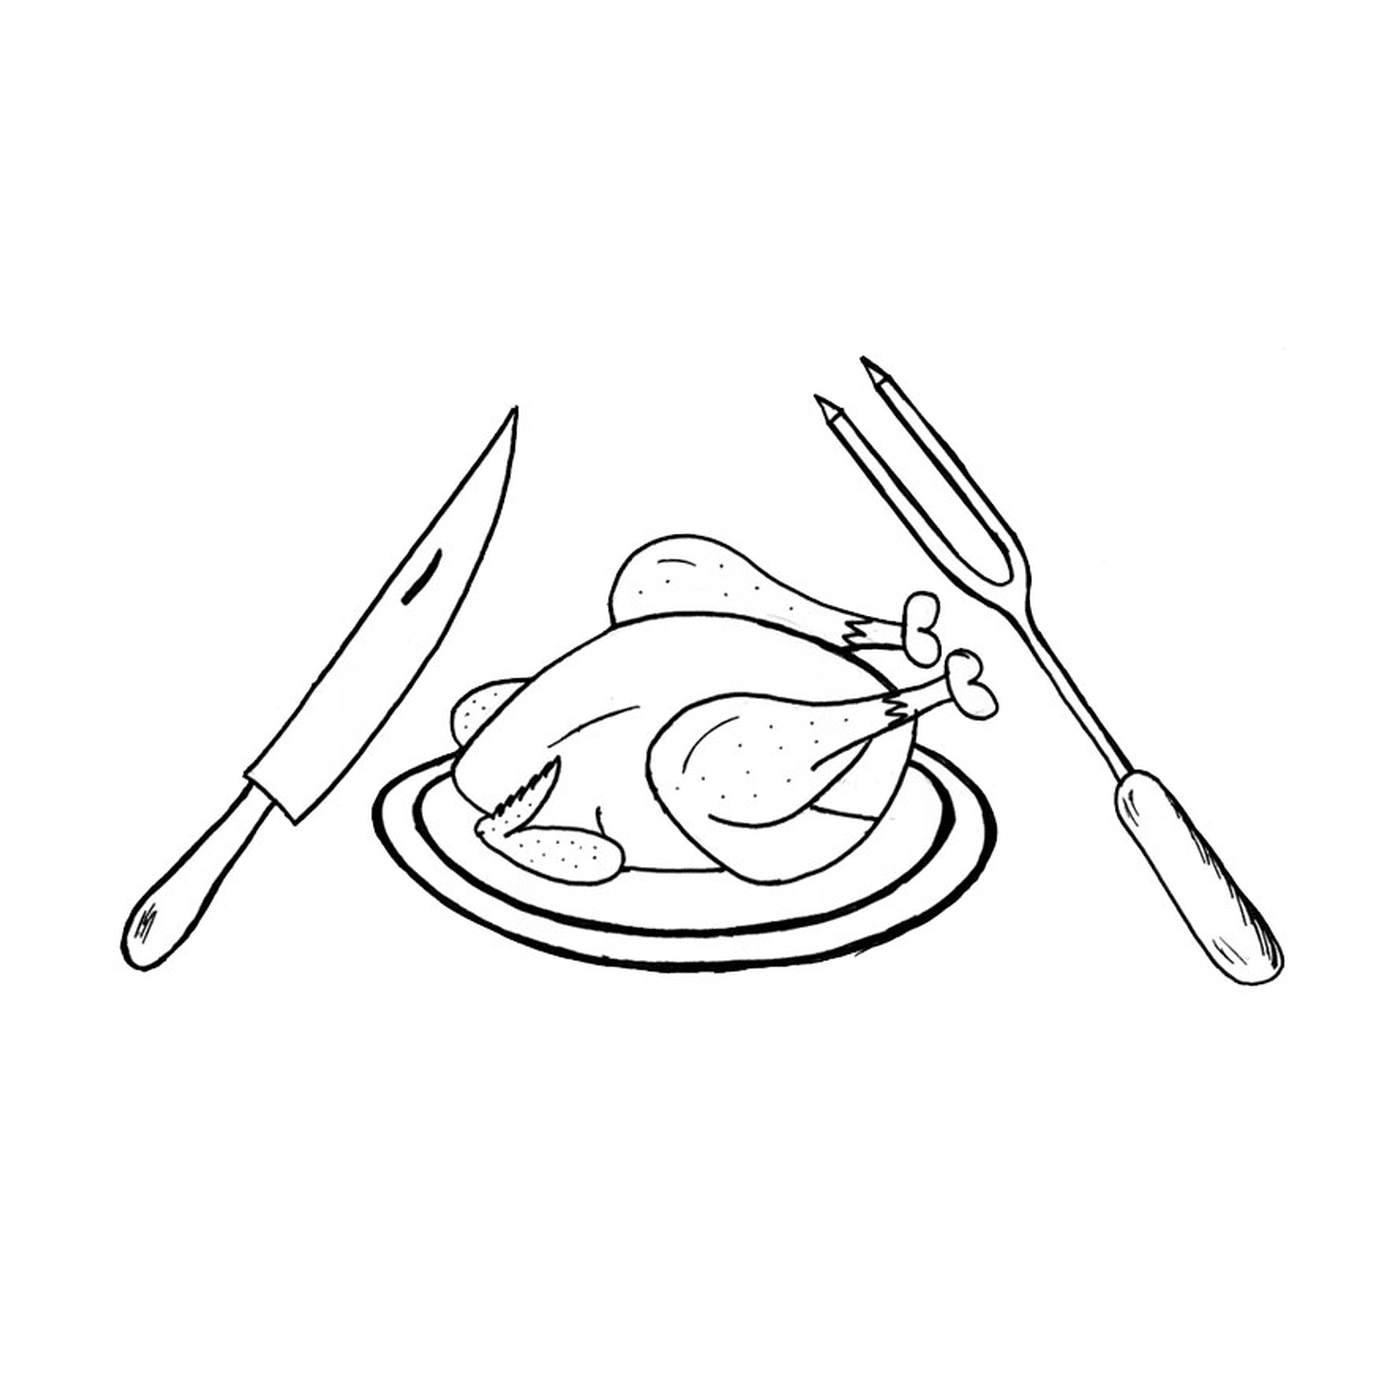   Un poulet sur une assiette avec un couteau, une fourchette et une fourchette 